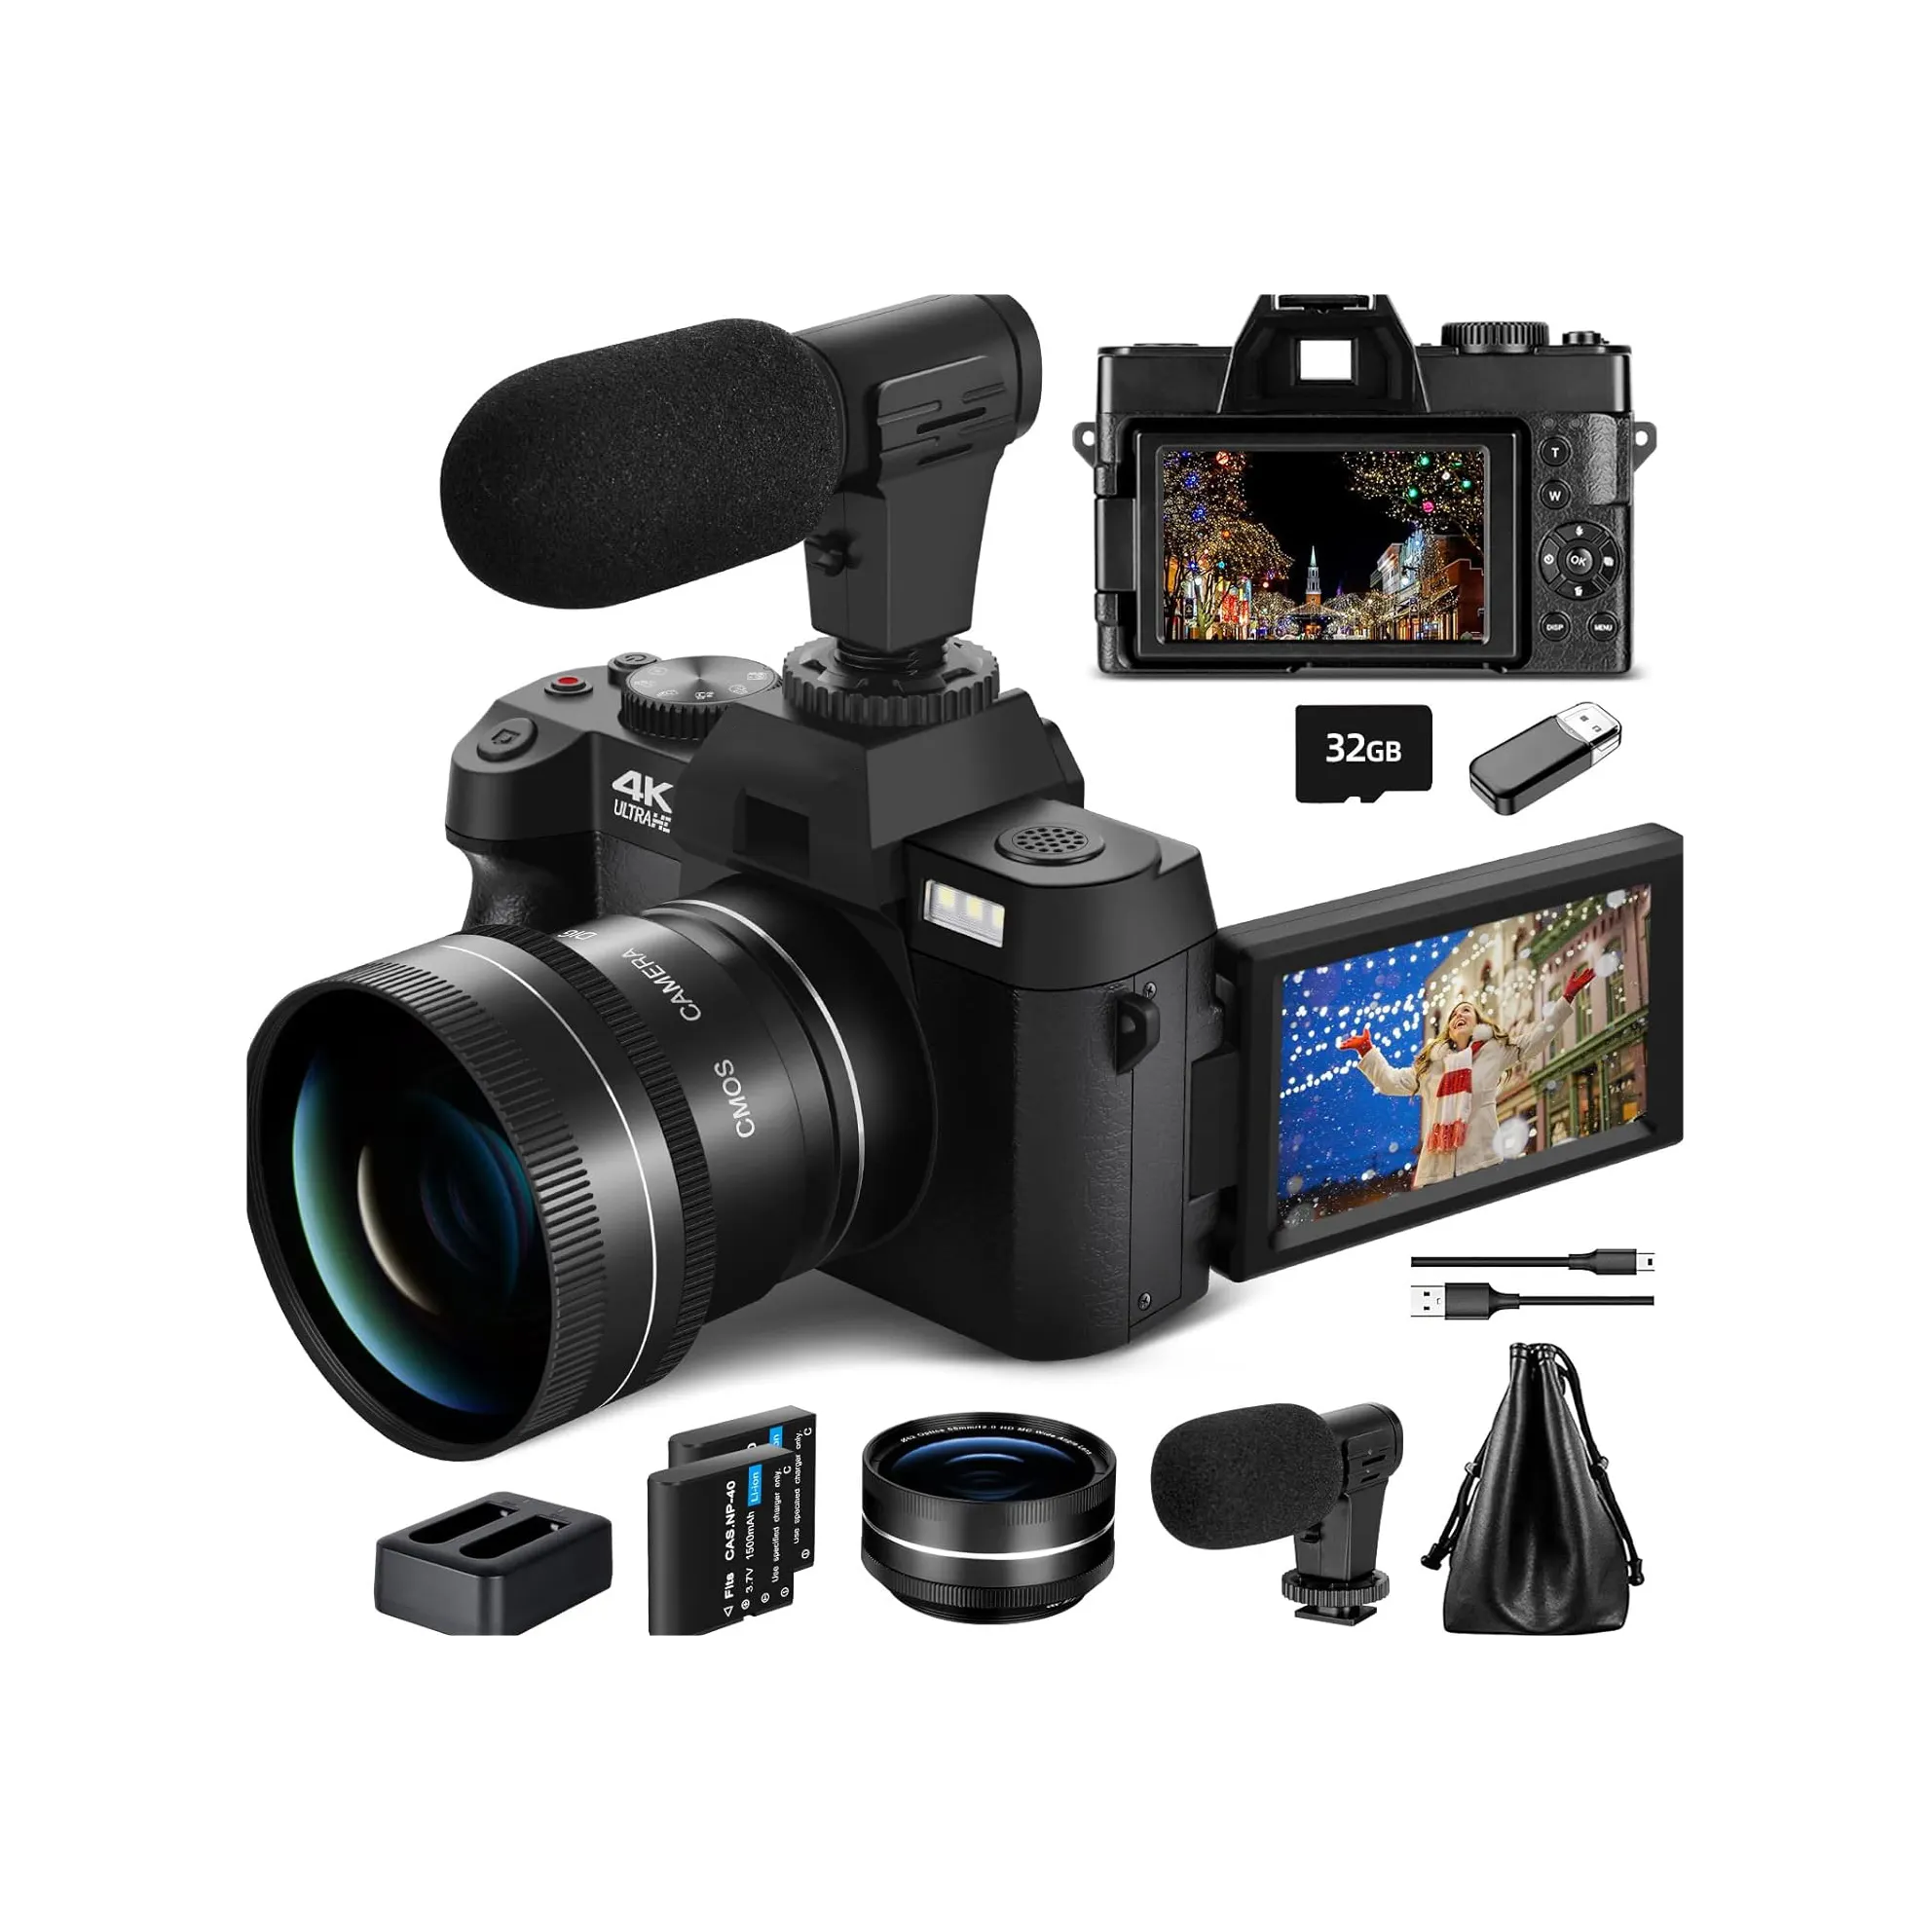 NBD F 2,8 Lente de apertura máxima Micro baterías de litio duales micrófono grabación de video 16x zoom cámara digital para fotografía